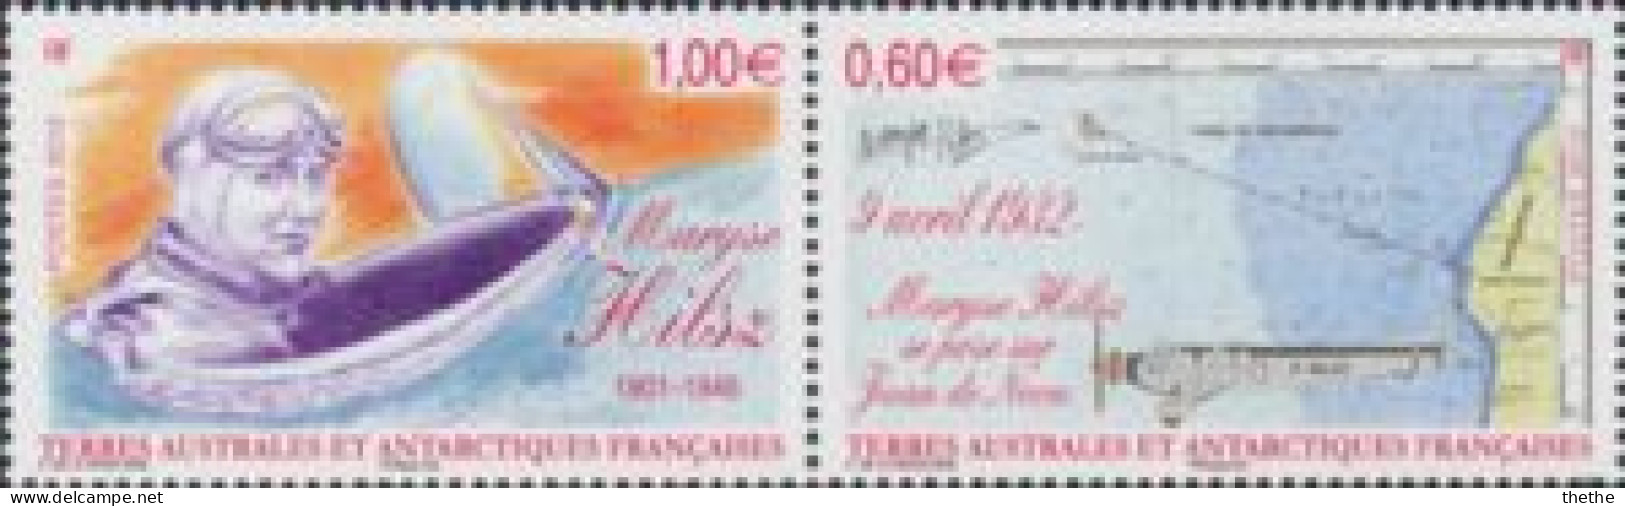 Terres Australes Et Antarctiques Françaises - Le Vol De Maryse Hilsz à Juan De Nova - Unused Stamps